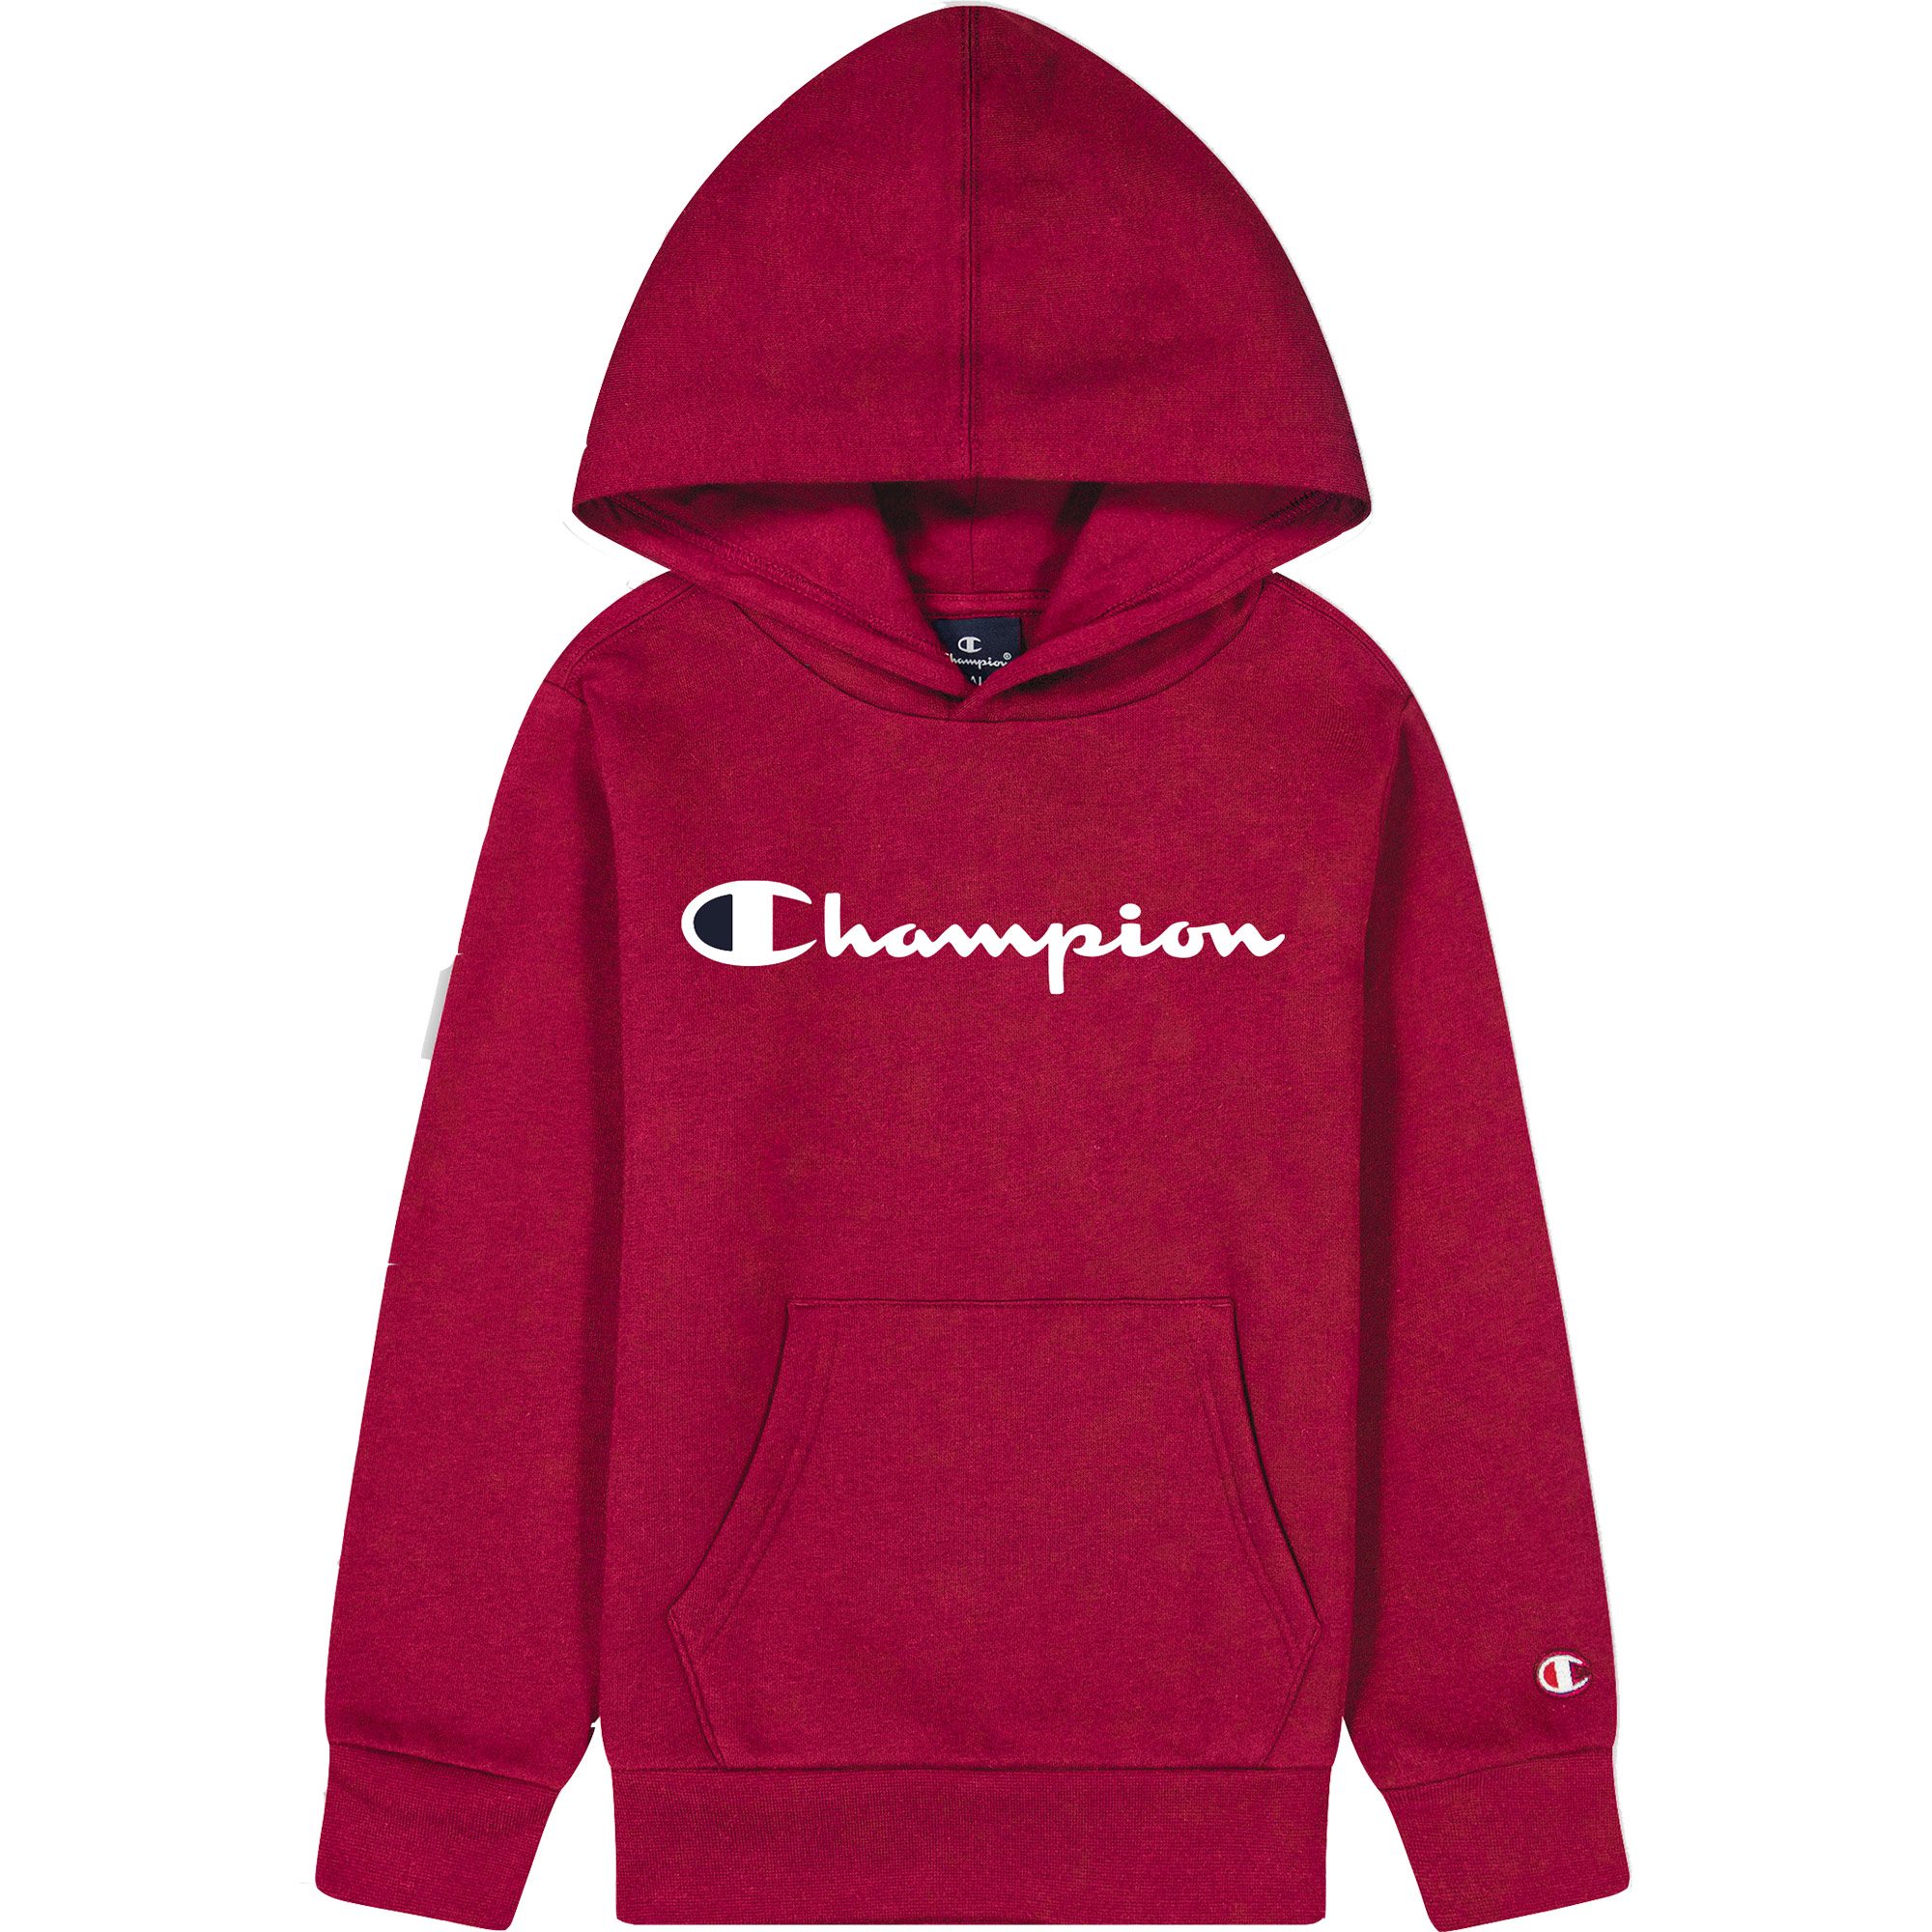 Champion - Hooded Sweatshirt Jungen tibetan red kaufen im Sport Bittl Shop